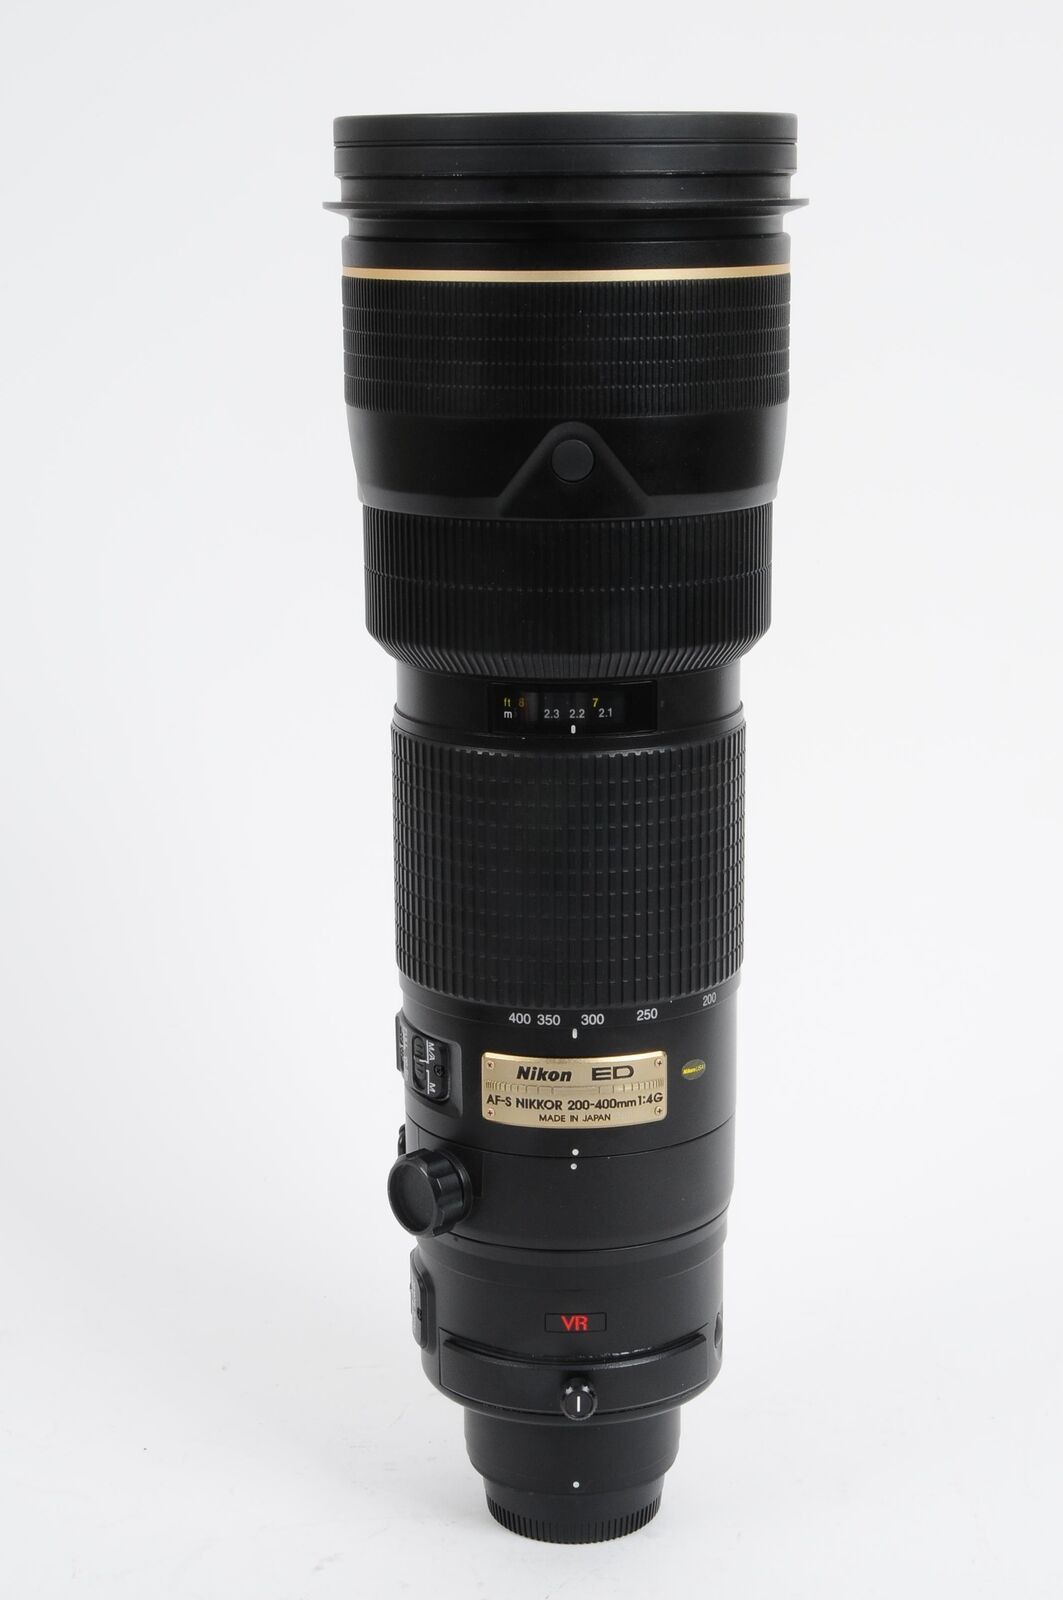 Nikon AF-S 200-400mm f4G ED VR